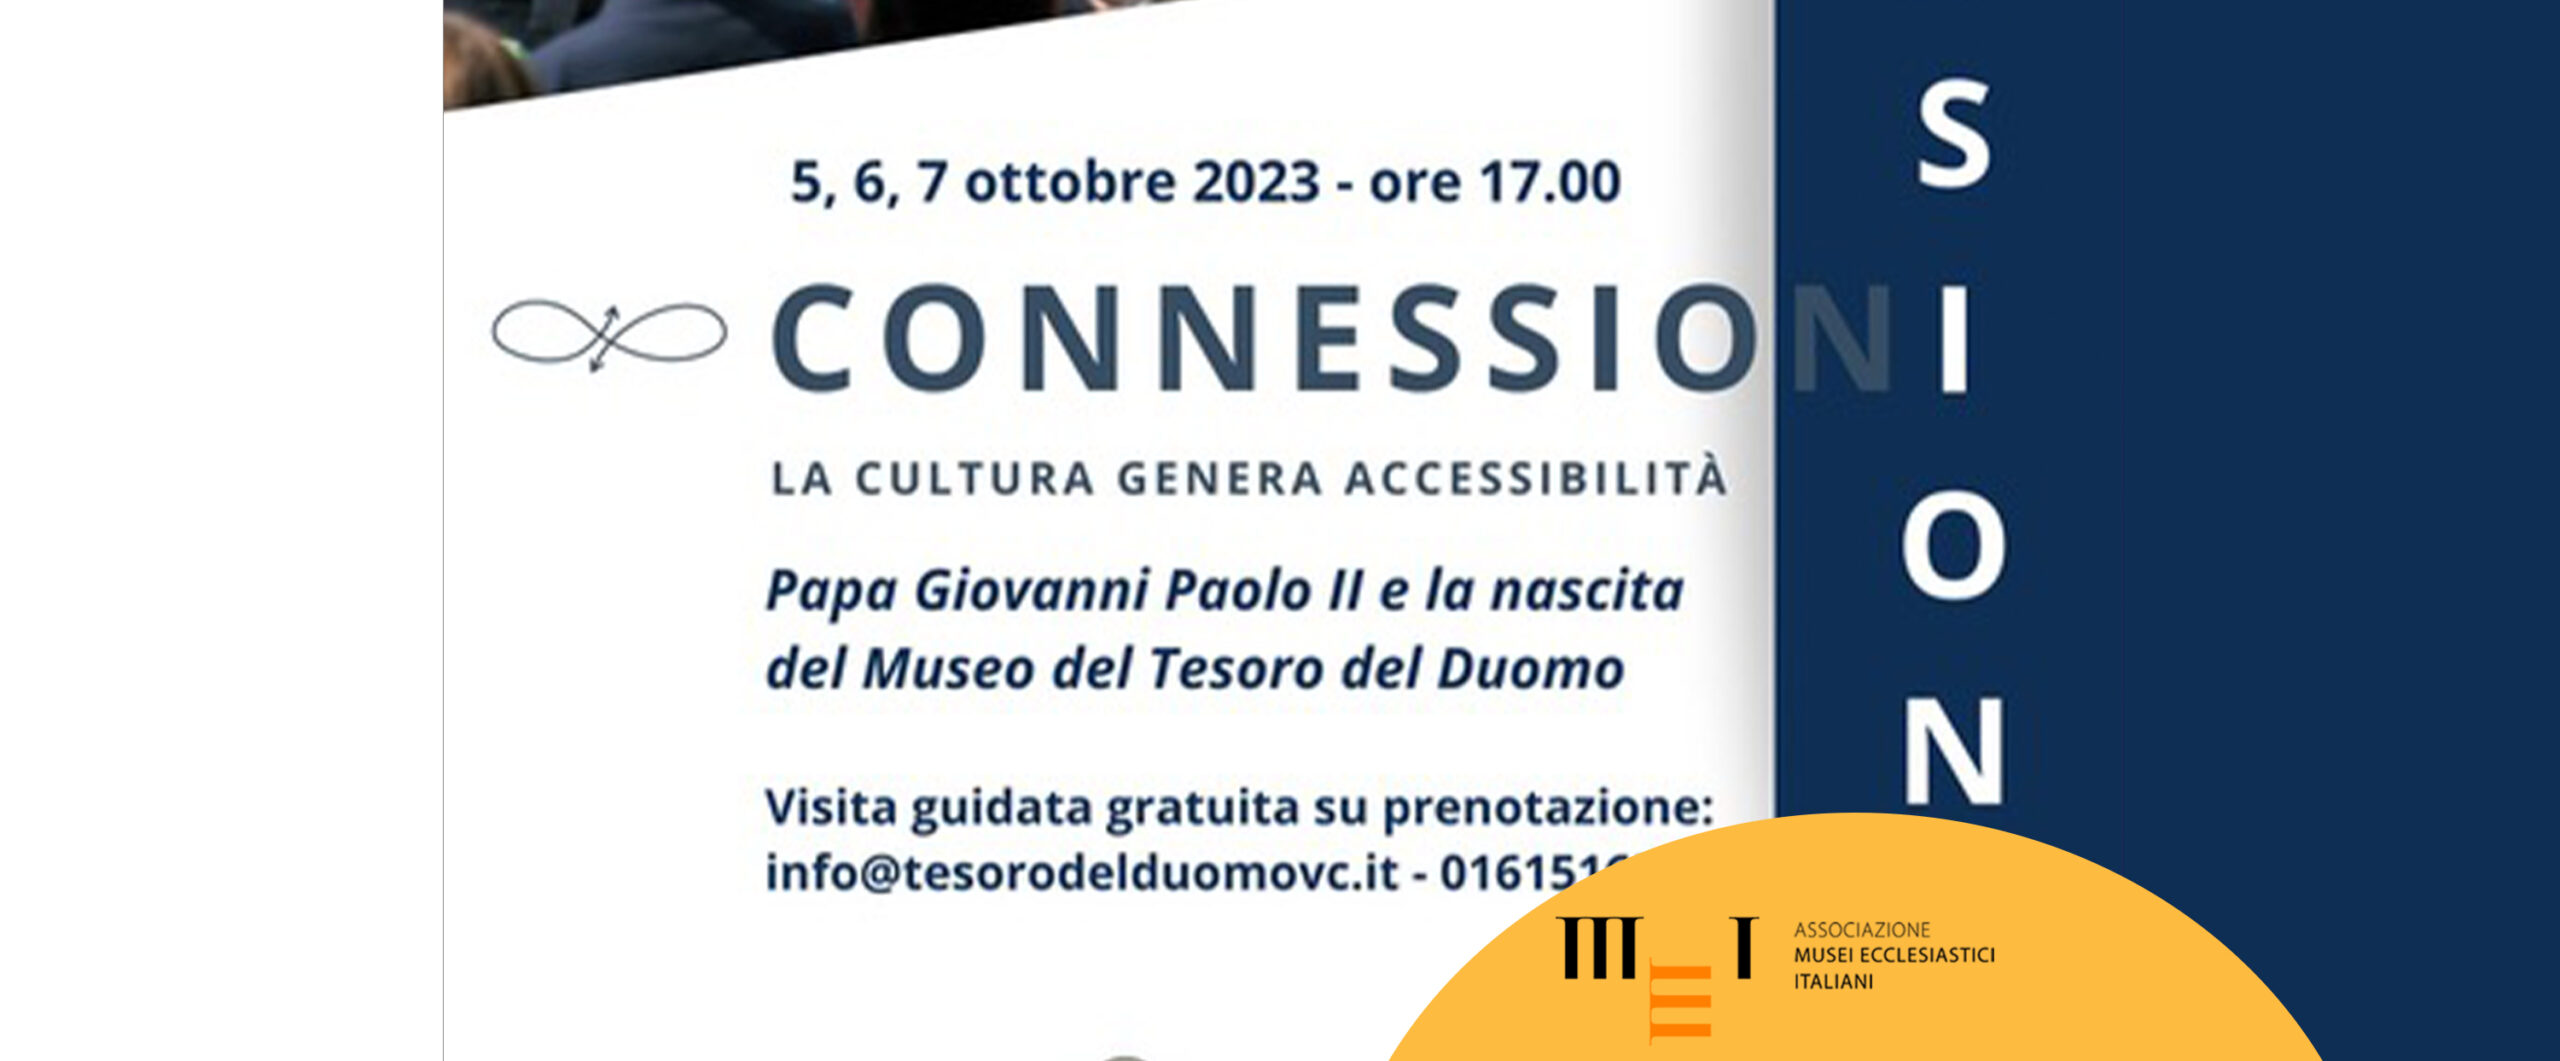 Connessioni, 5-10 ottobre 2023. Museo del Tesoro del Duomo di Vercelli